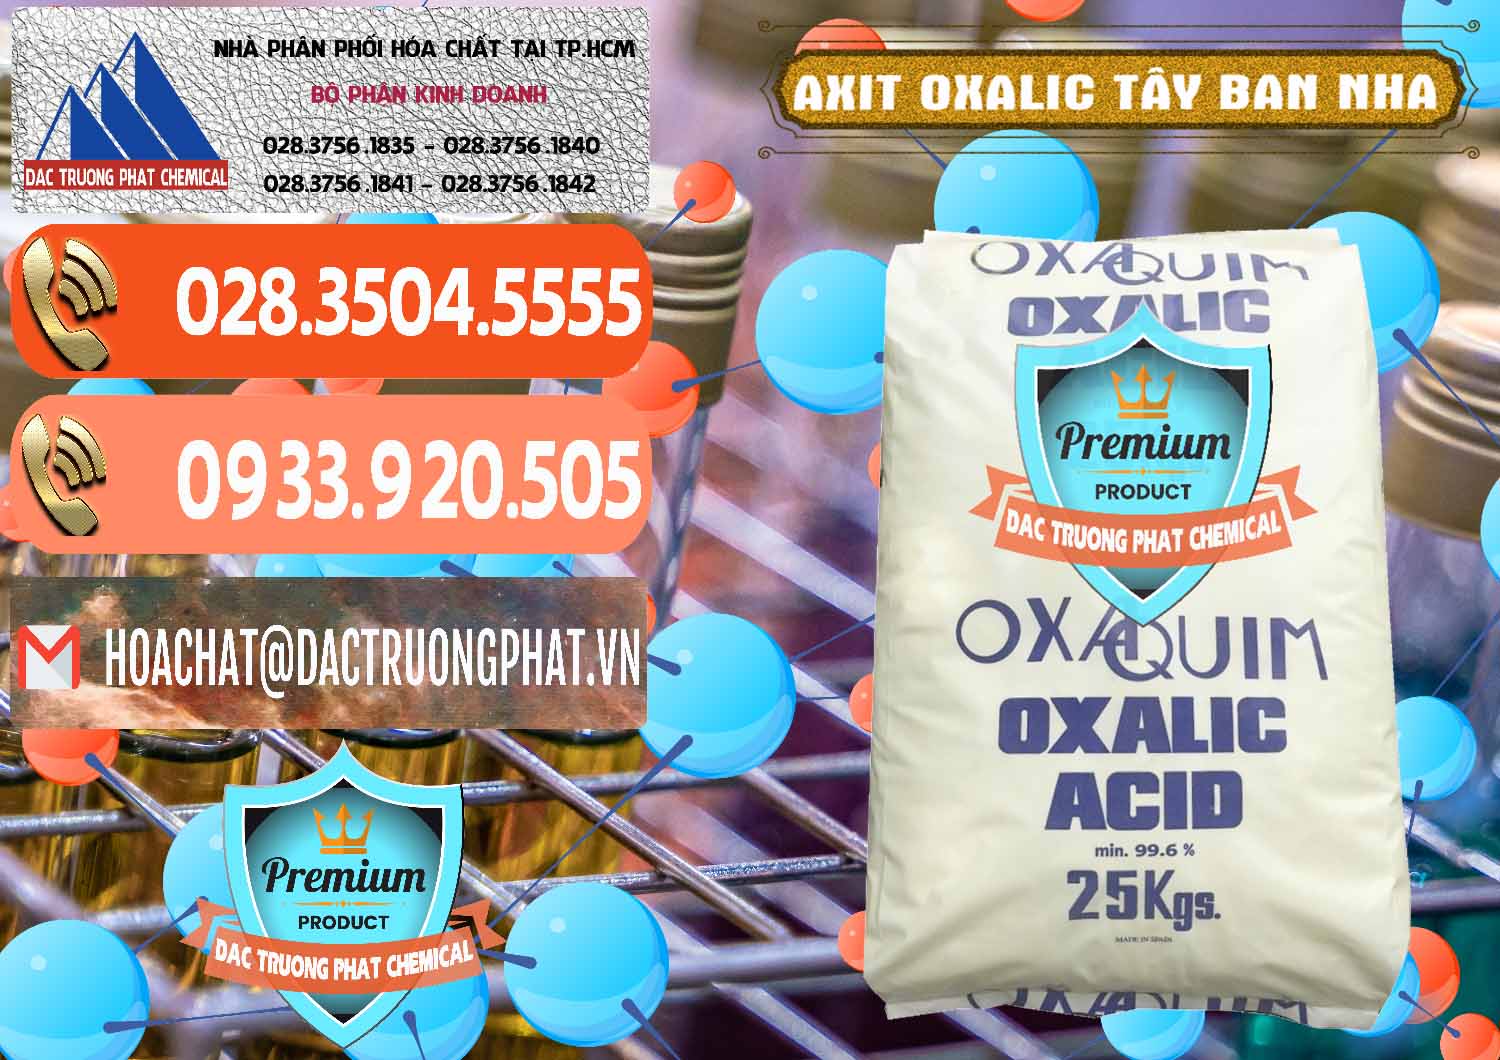 Cty chuyên bán - cung ứng Acid Oxalic – Axit Oxalic 99.6% Tây Ban Nha Spain - 0269 - Đơn vị kinh doanh và phân phối hóa chất tại TP.HCM - hoachatmientay.com